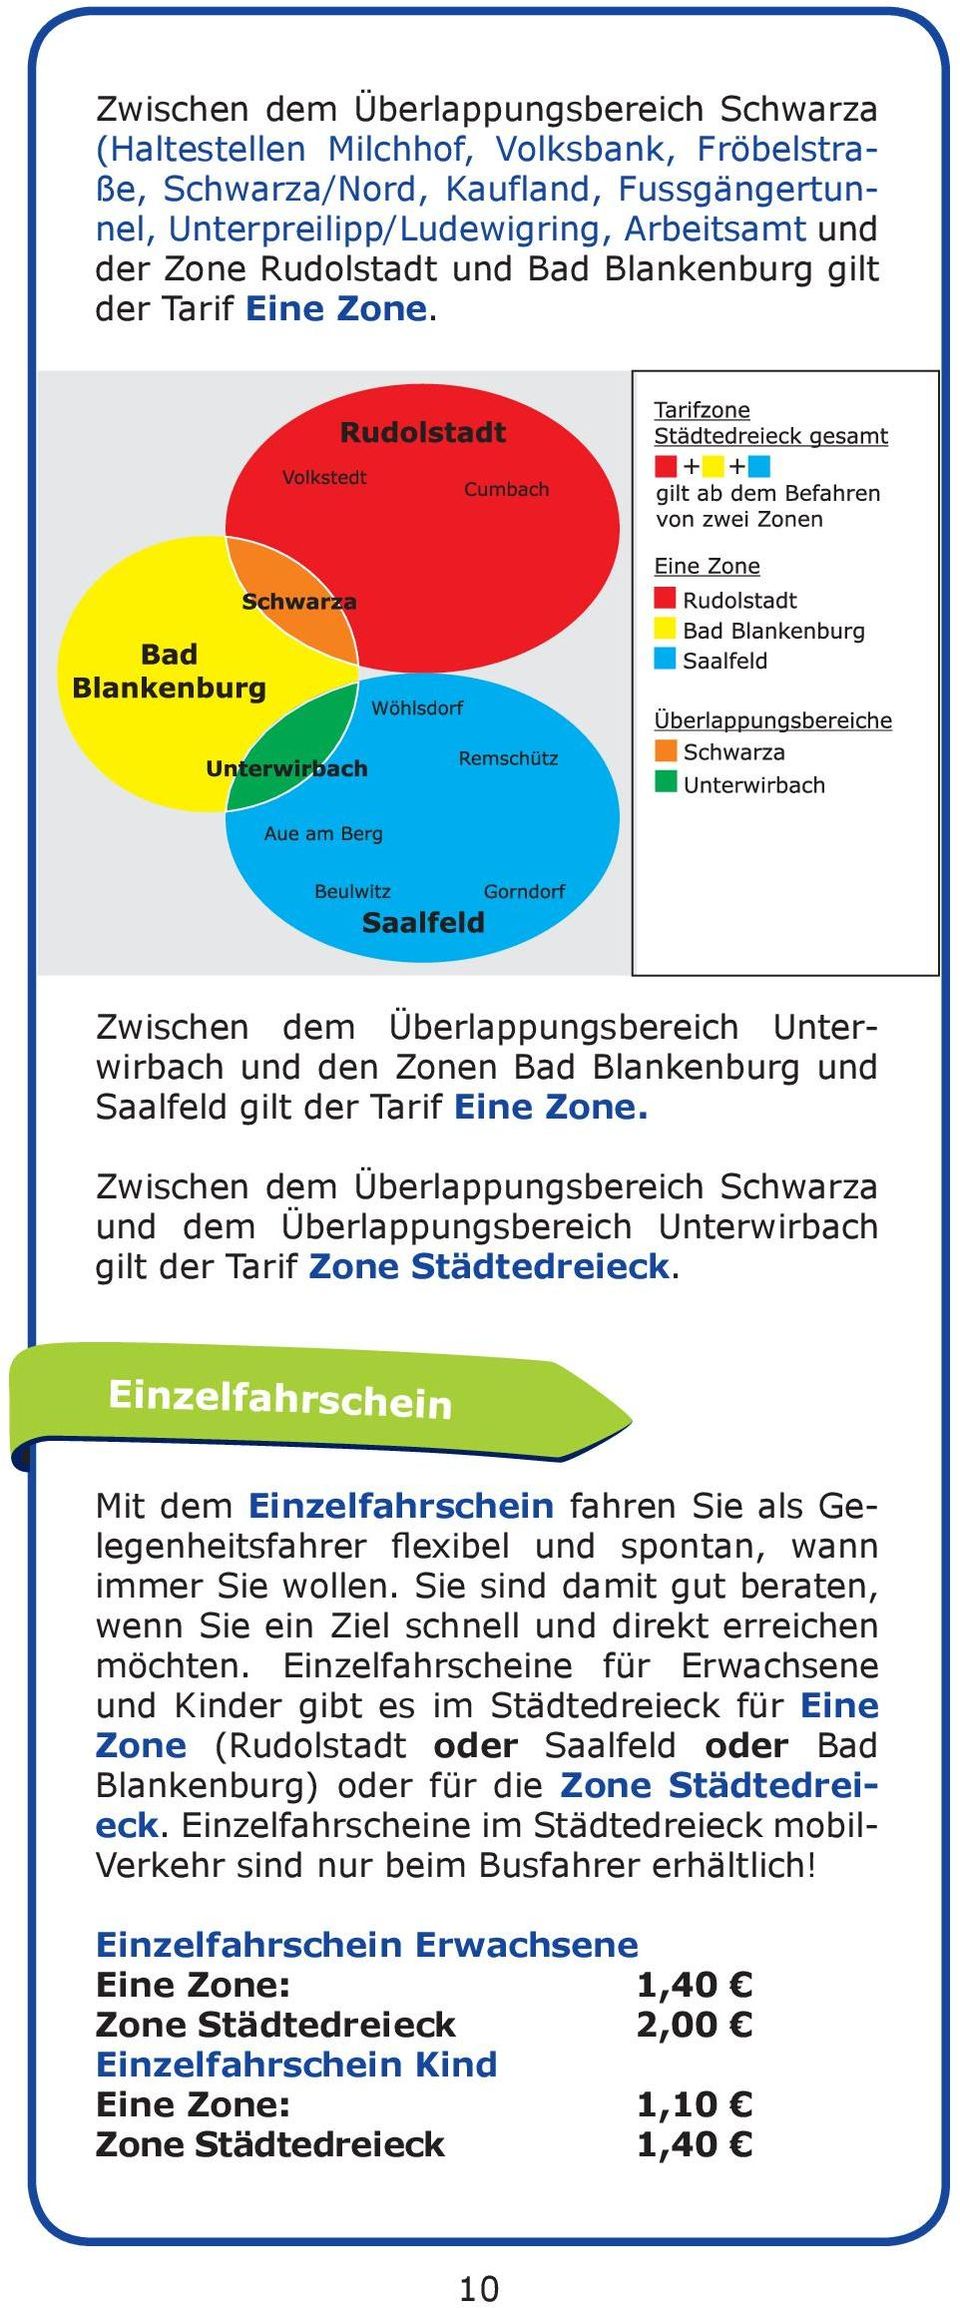 Zwischen dem Überlappungsbereich Schwarza und dem Überlappungsbereich Unterwirbach gilt der Tarif Zone Städtedreieck.